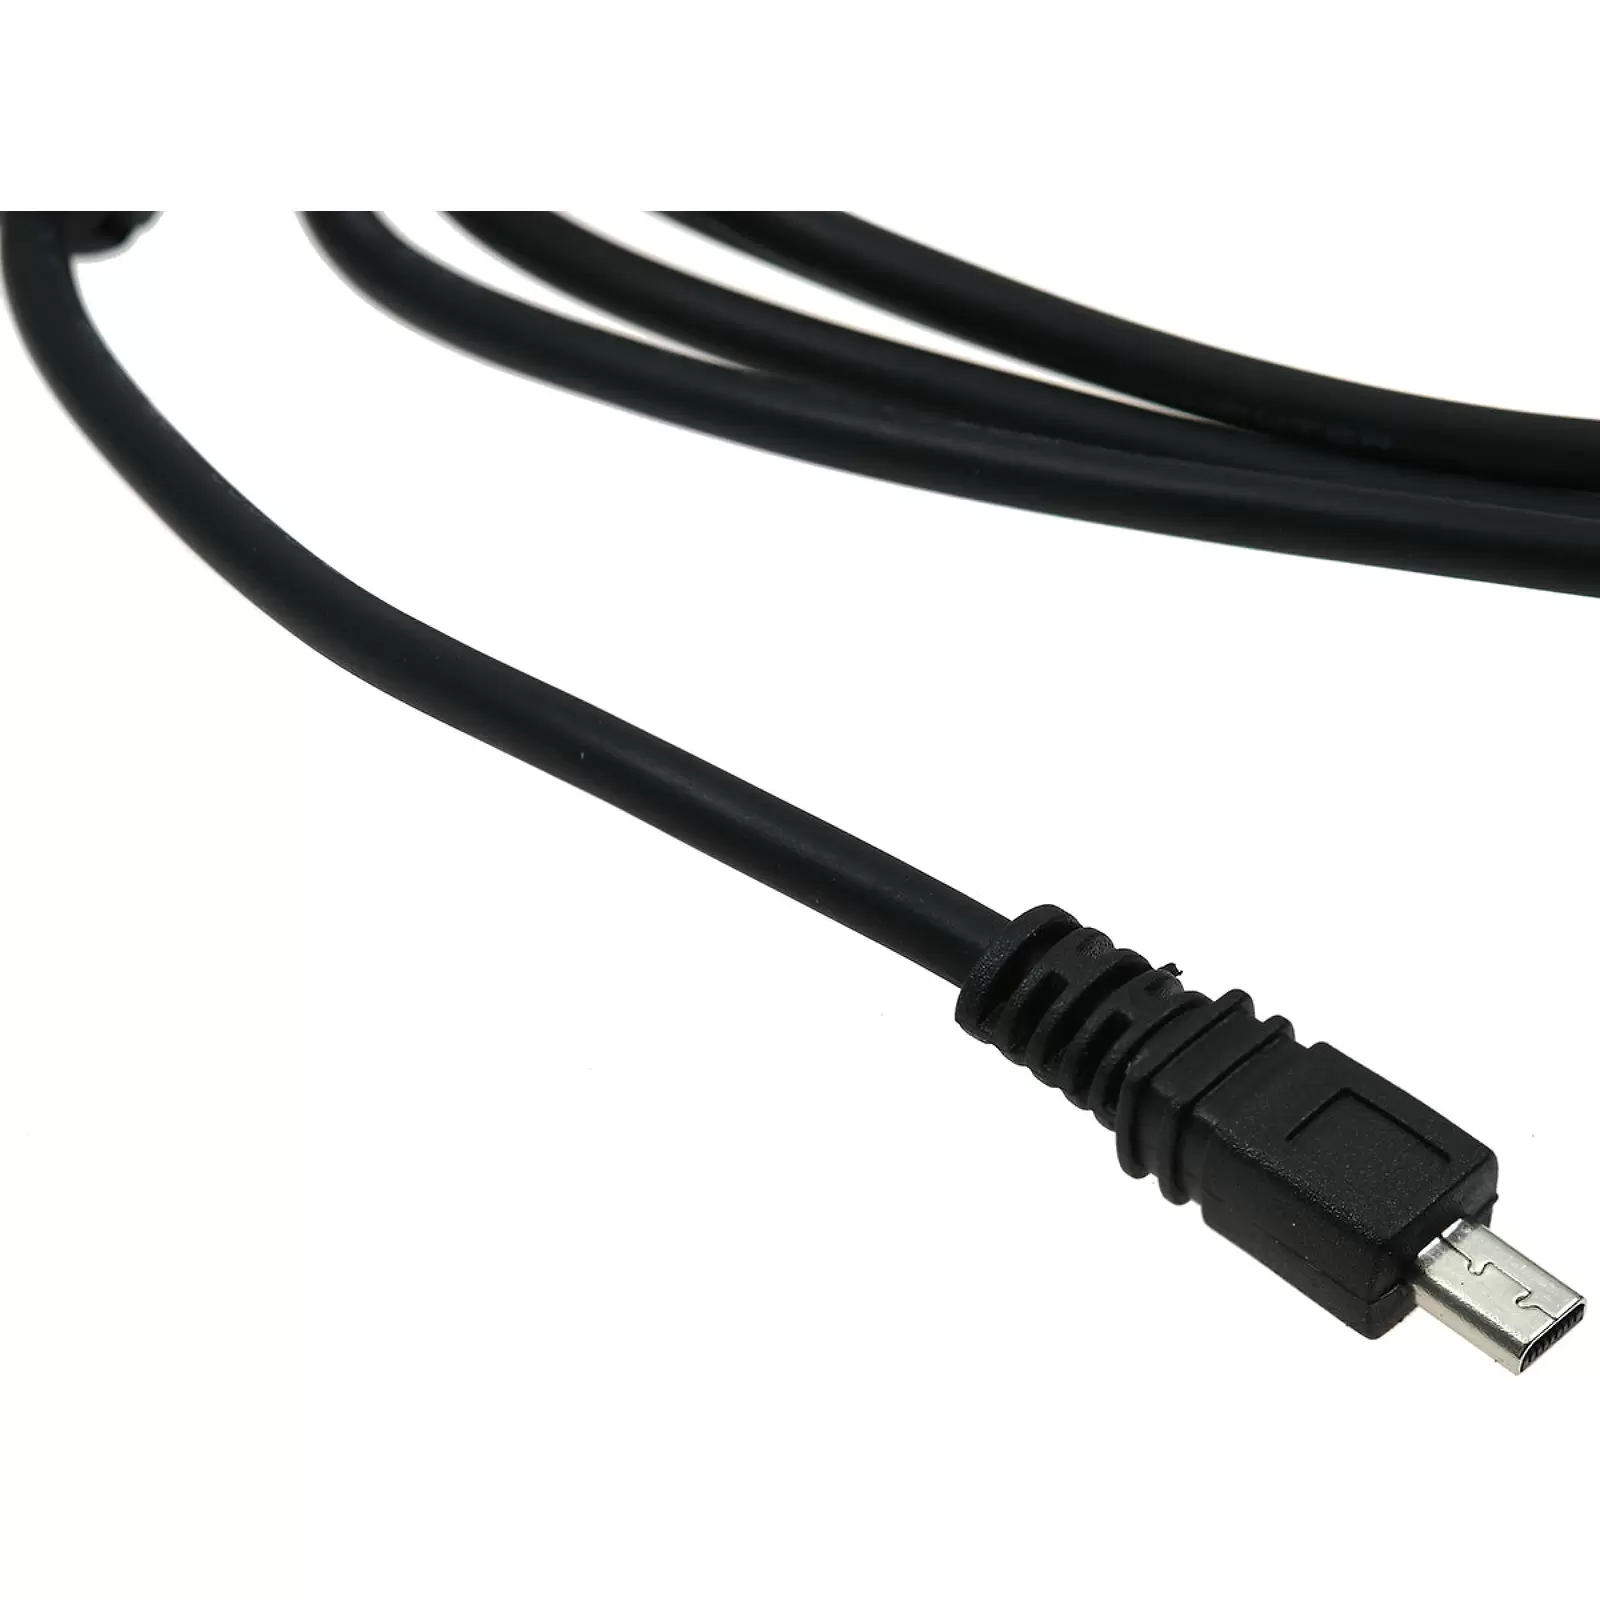 USB-Datenkabel kompatibel mit Panasonic K1HA08CD0019 / Casio EMC-5